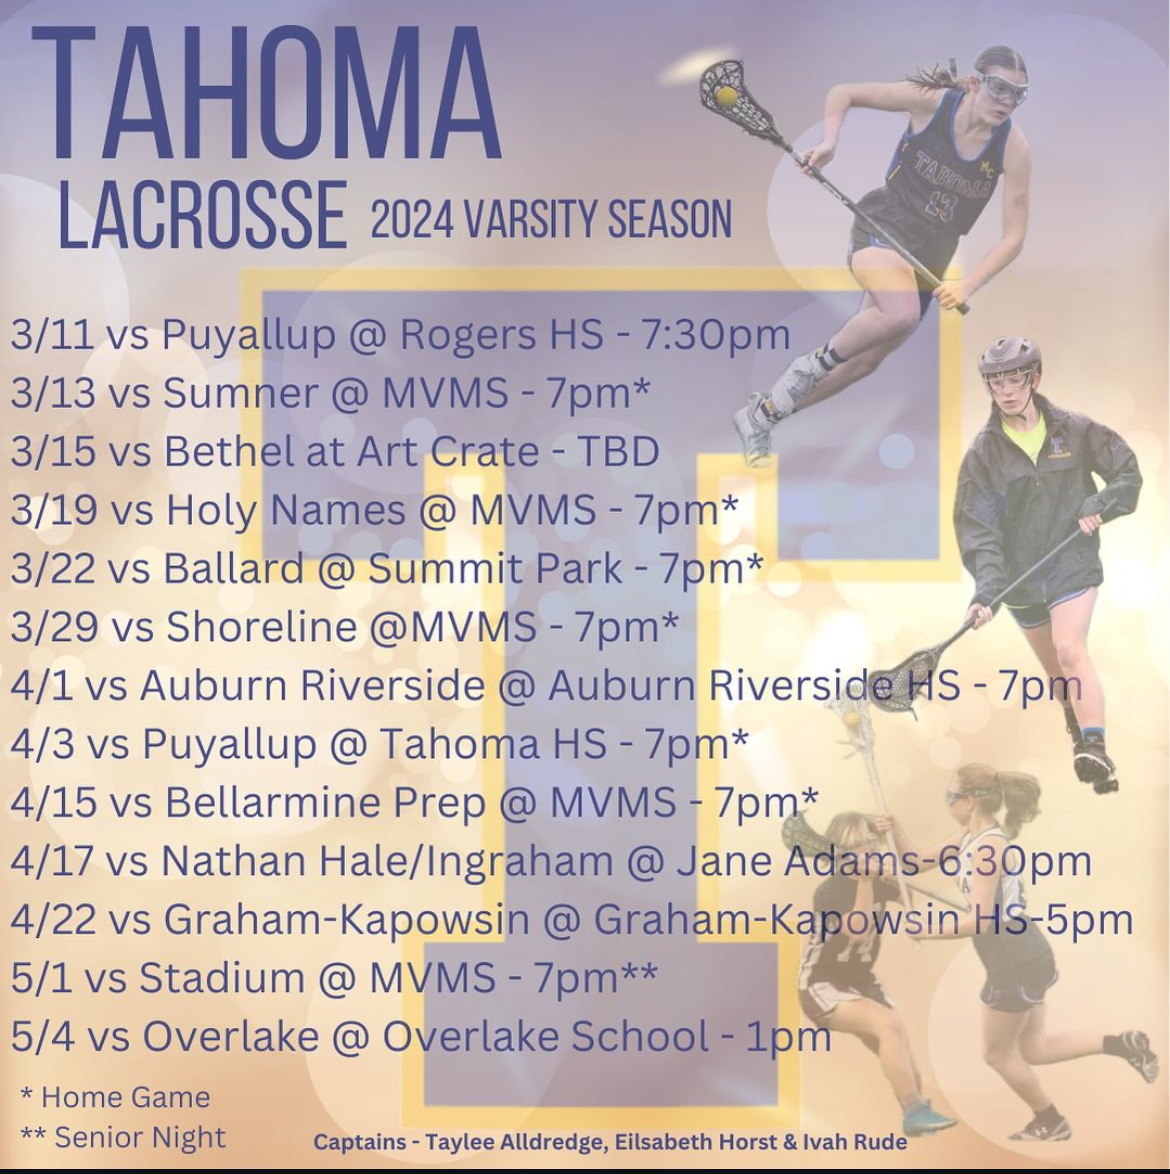 Tahoma+Lacrosse+2024